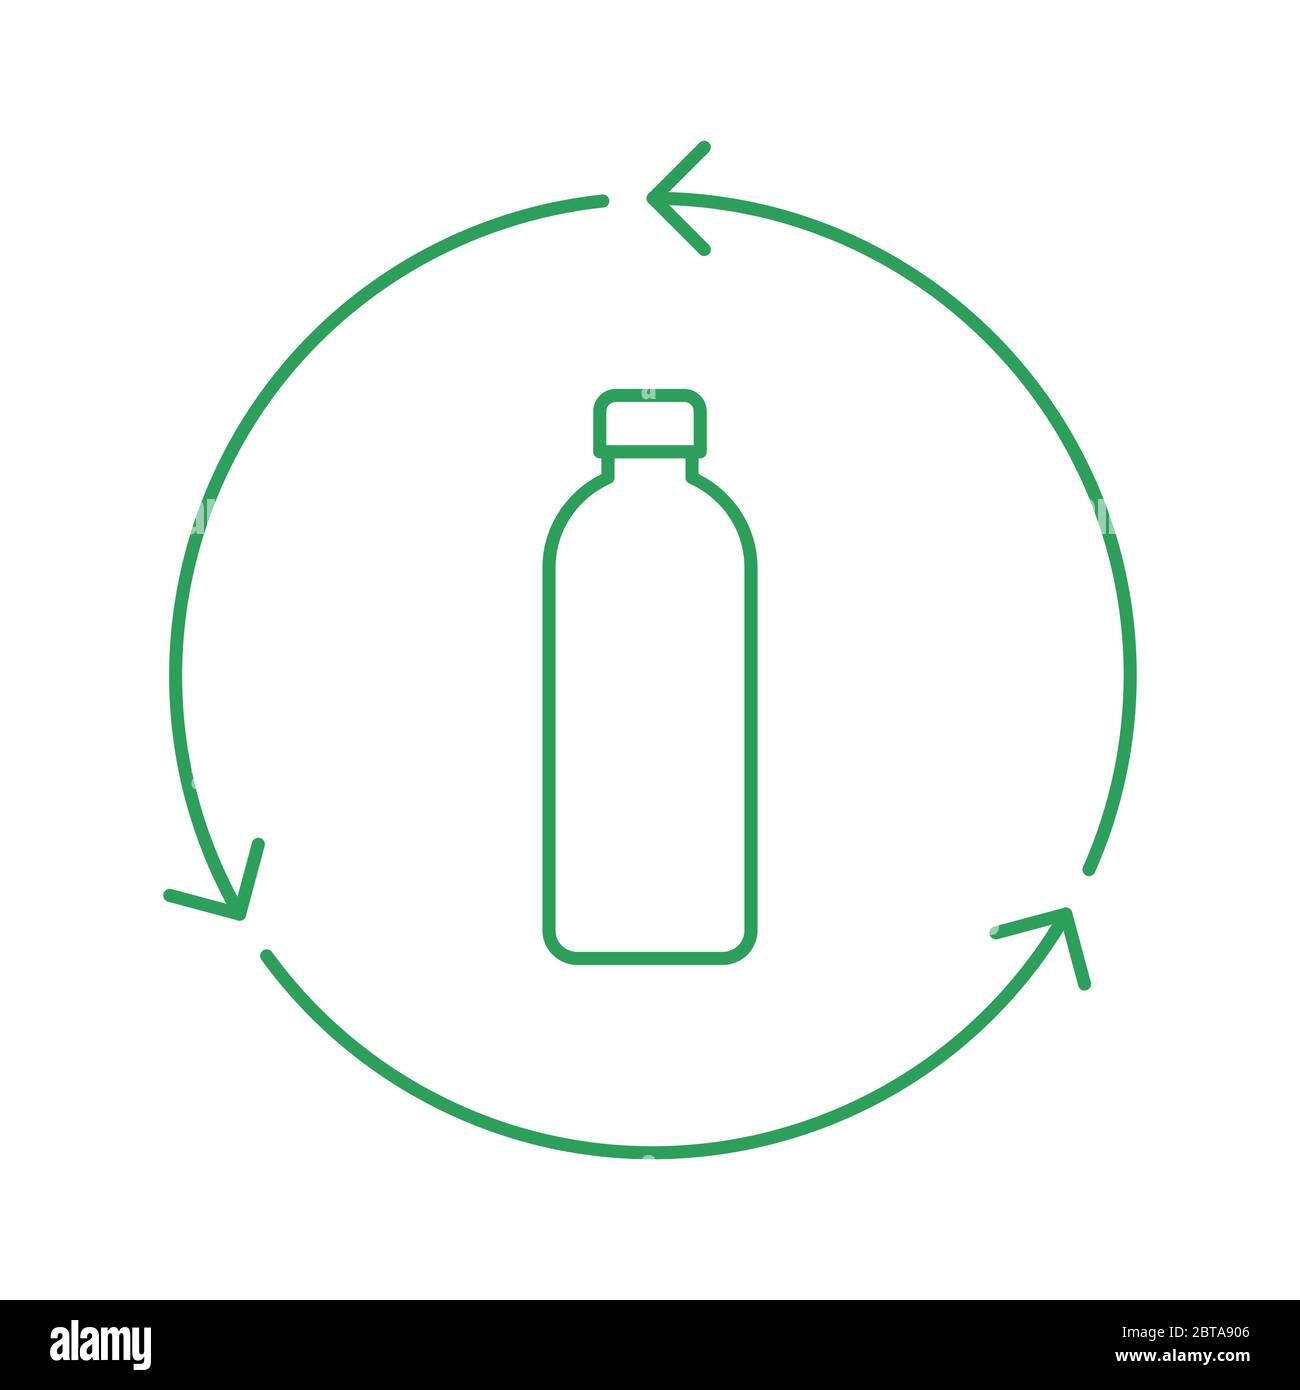 Schild für Recycling-Flaschen. Grüne Plastikflasche im Kreis mit Pfeilen. Grüne Umrandung auf weißem Hintergrund. Symbol für wiederverwendbare Glasflaschen. Recycling-Material Stock Vektor